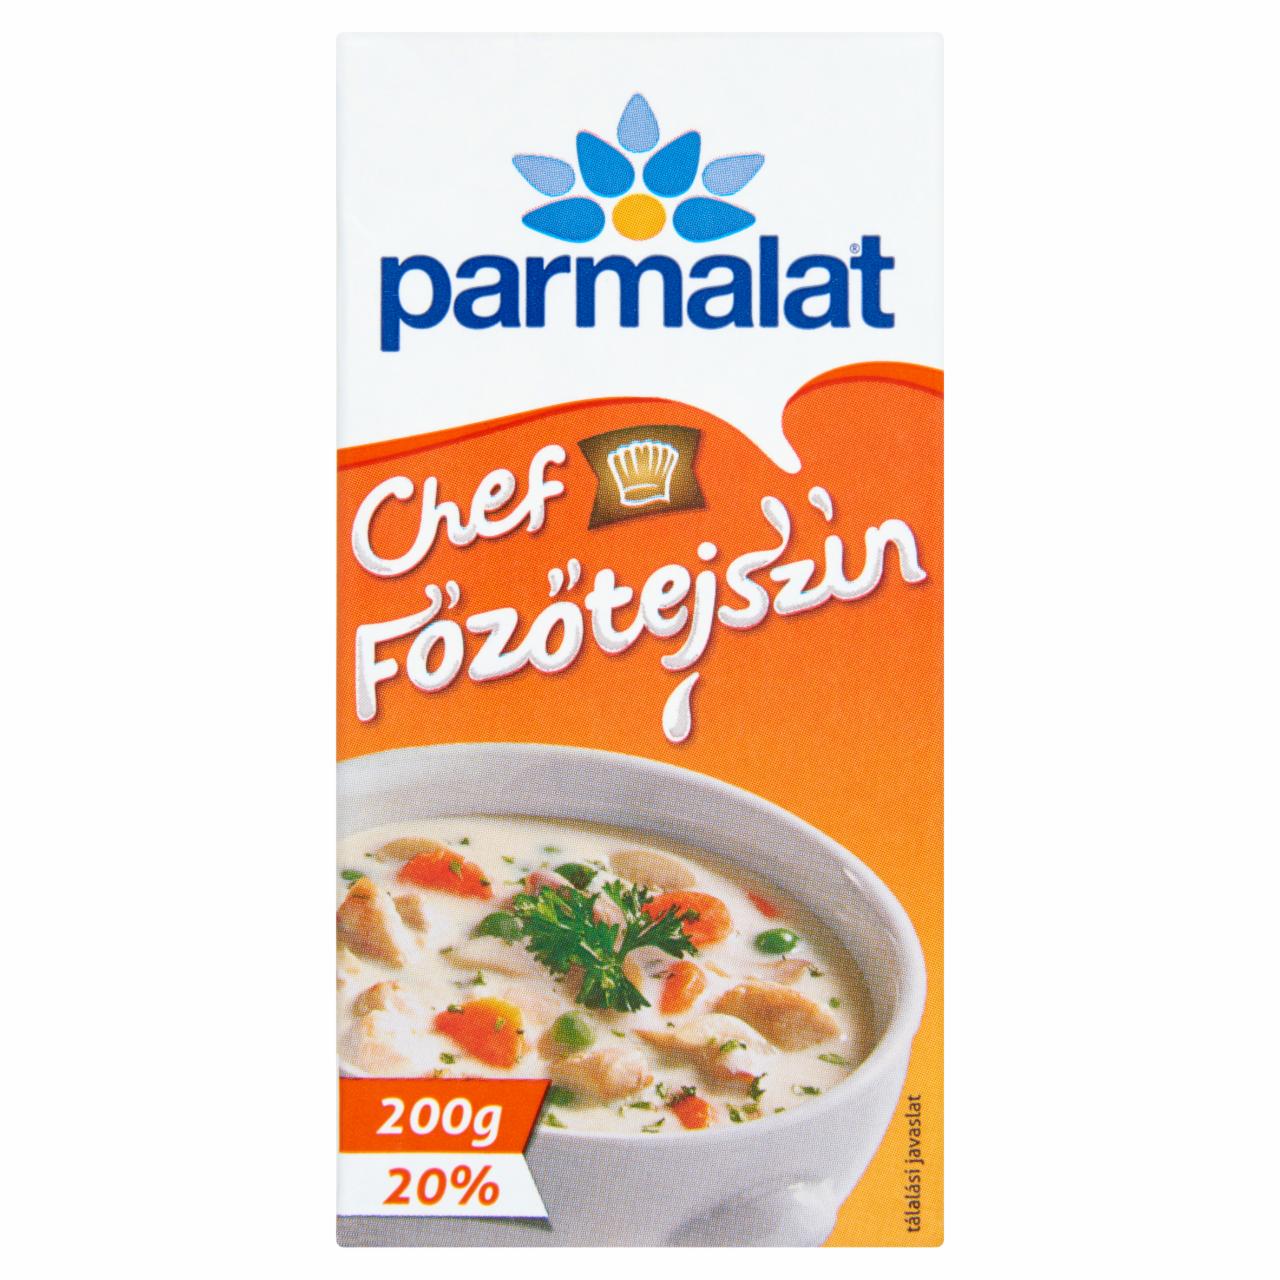 Képek - Parmalat Chef UHT főzőtejszín 20% 200 g